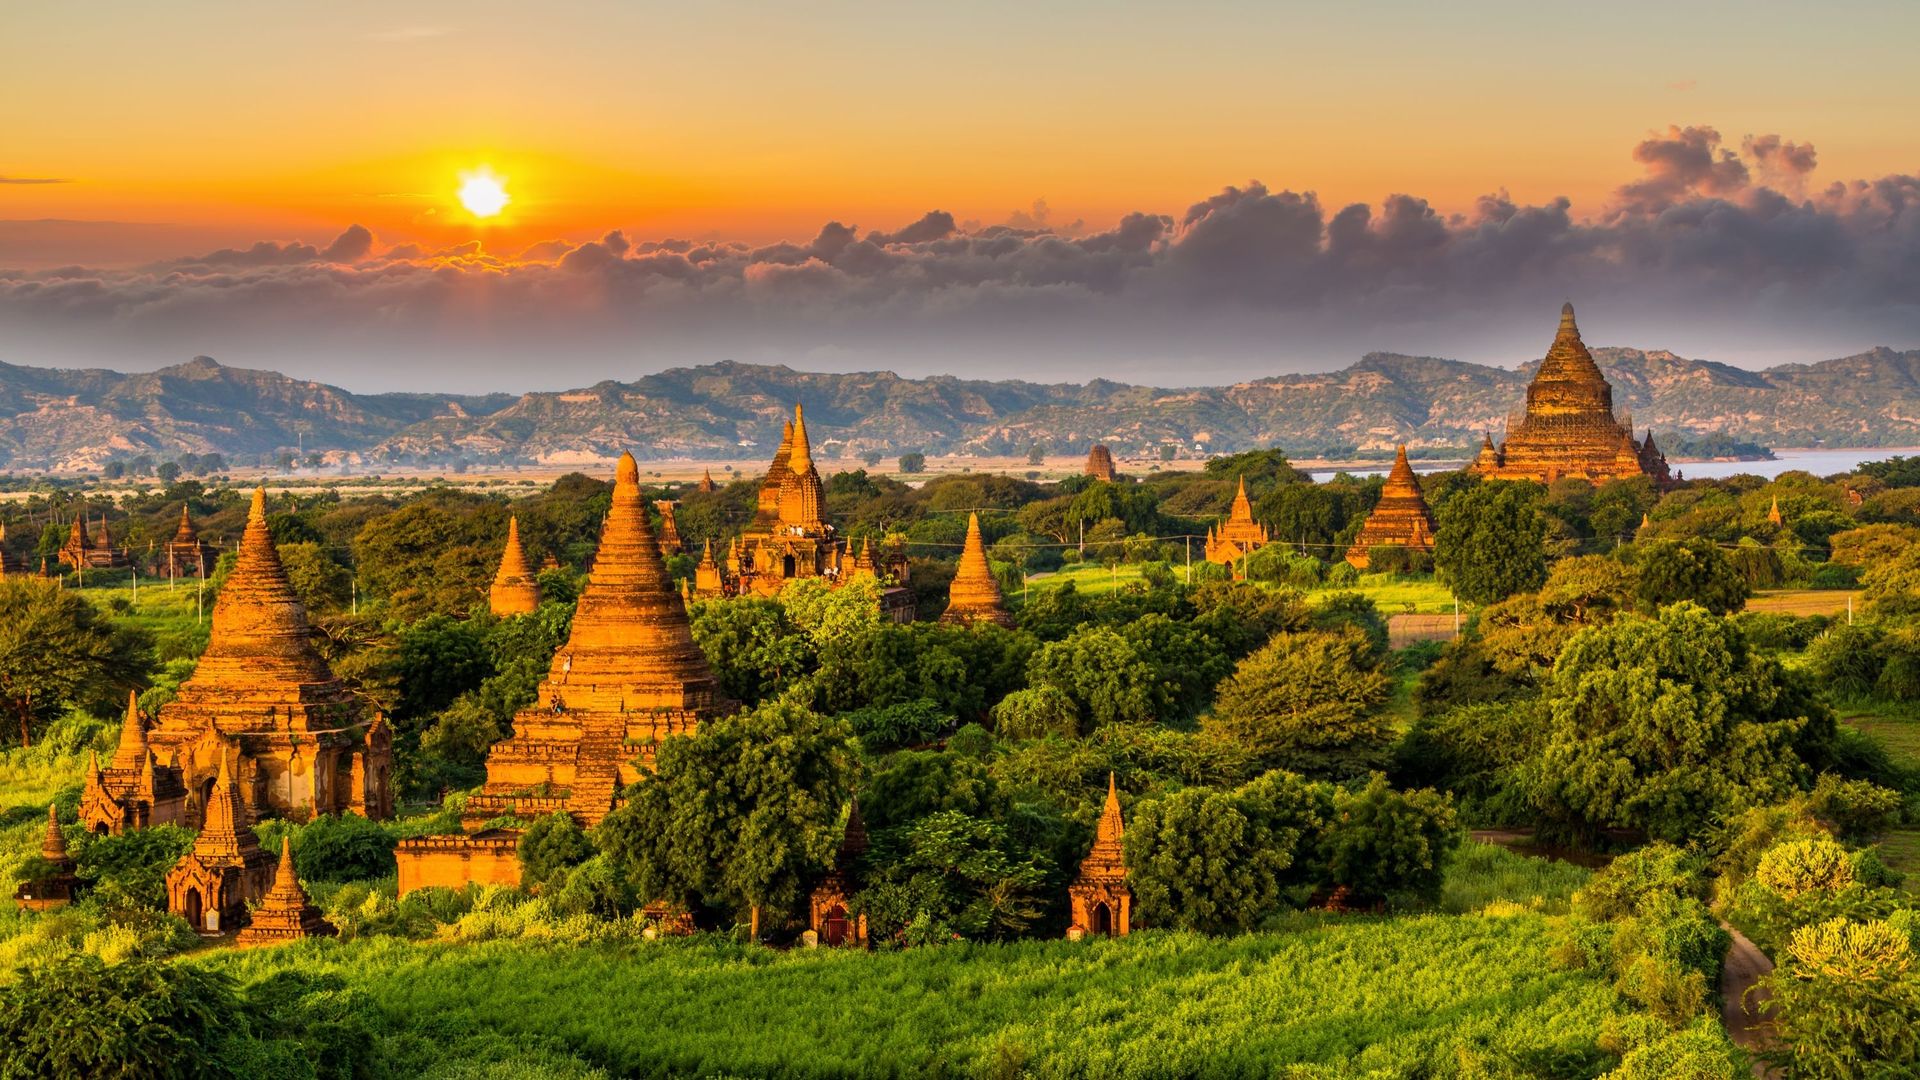 La scène s'est déroulée devant l'une des pagodes de Bagan, au Myanmar (Birmanie).